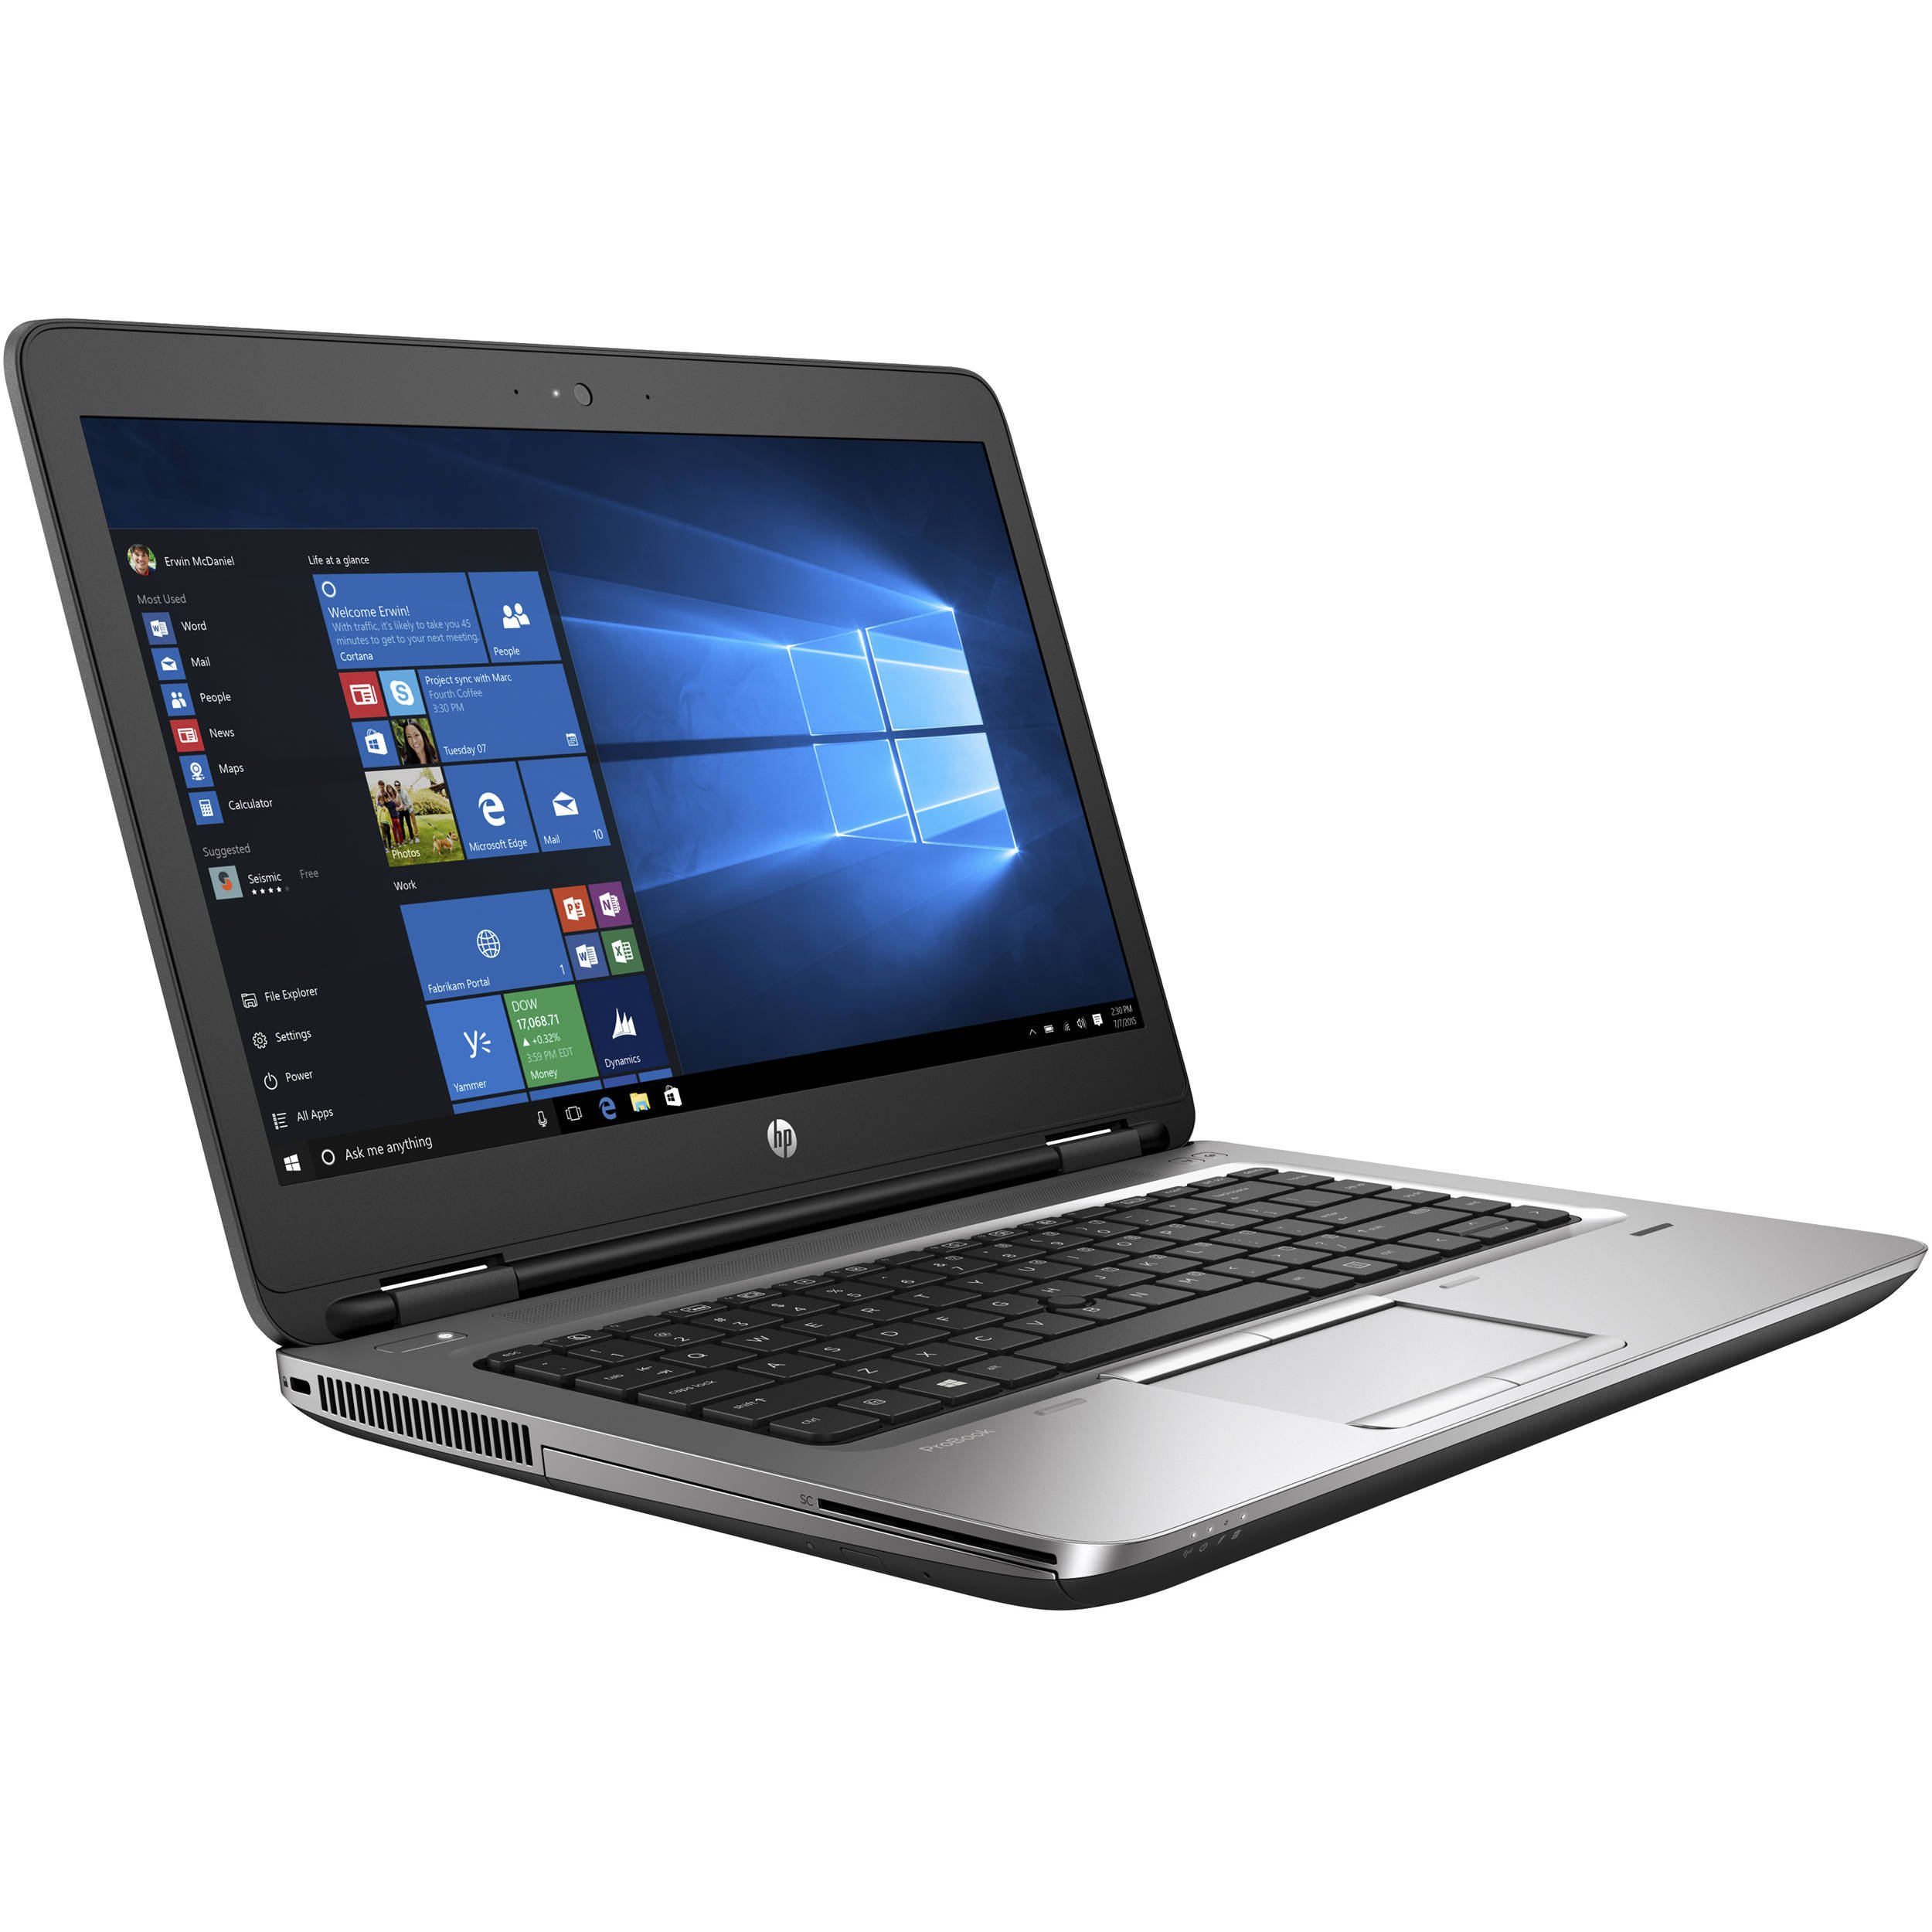 ProBook 640 G3 Notebook PC